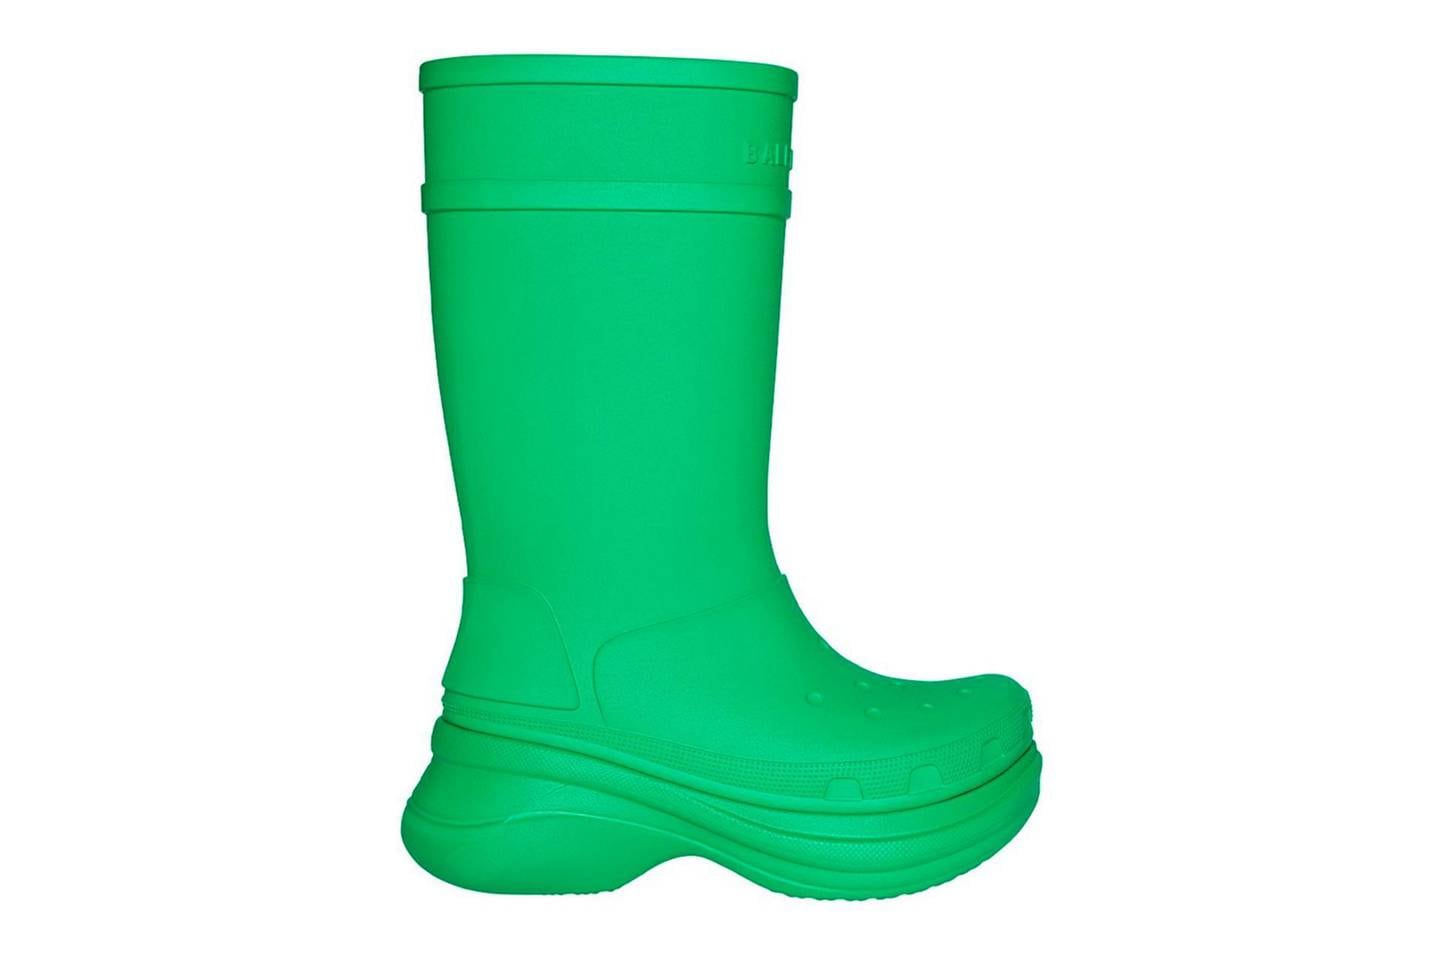 Balenciaga also unveiled a Crocs rain boot. Courtesy Balenciaga